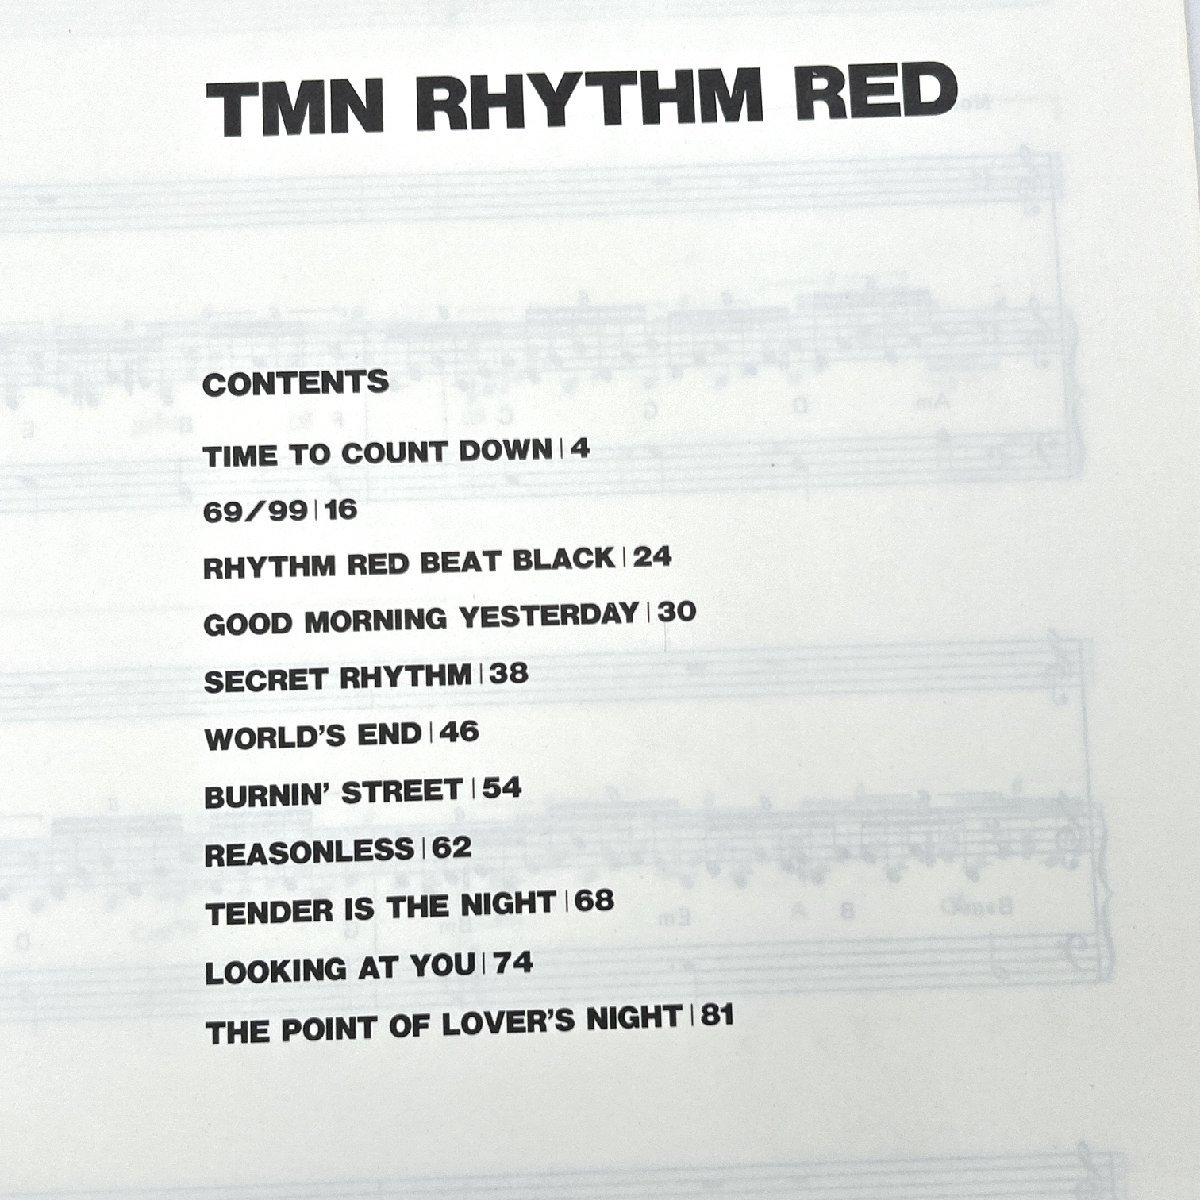 TM NETWORK фортепьяно музыкальное сопровождение 2 шт. комплект TM сеть [TM NETWORK Collection][RHYTHM RED]TMN фортепьяно * Solo фортепьяно &VOCAL[ дорога приятный sen .]